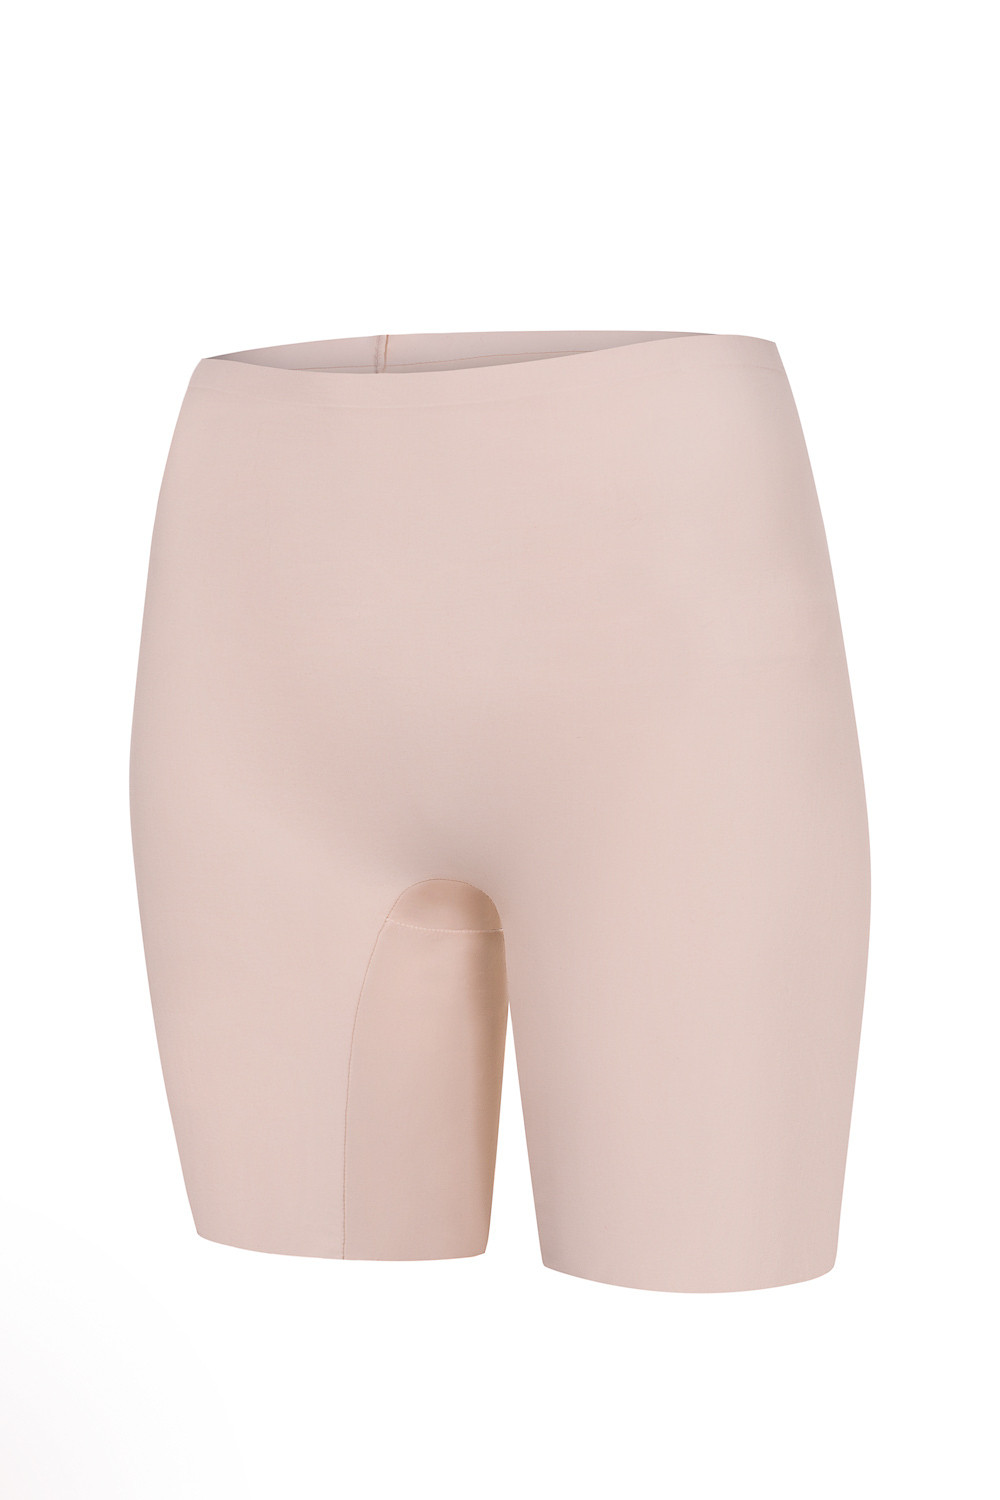 Tvarující dámské kalhotky Julimex Bermudy Comfort Barva: přírodní/neobvyklé.béžová, Velikost: L